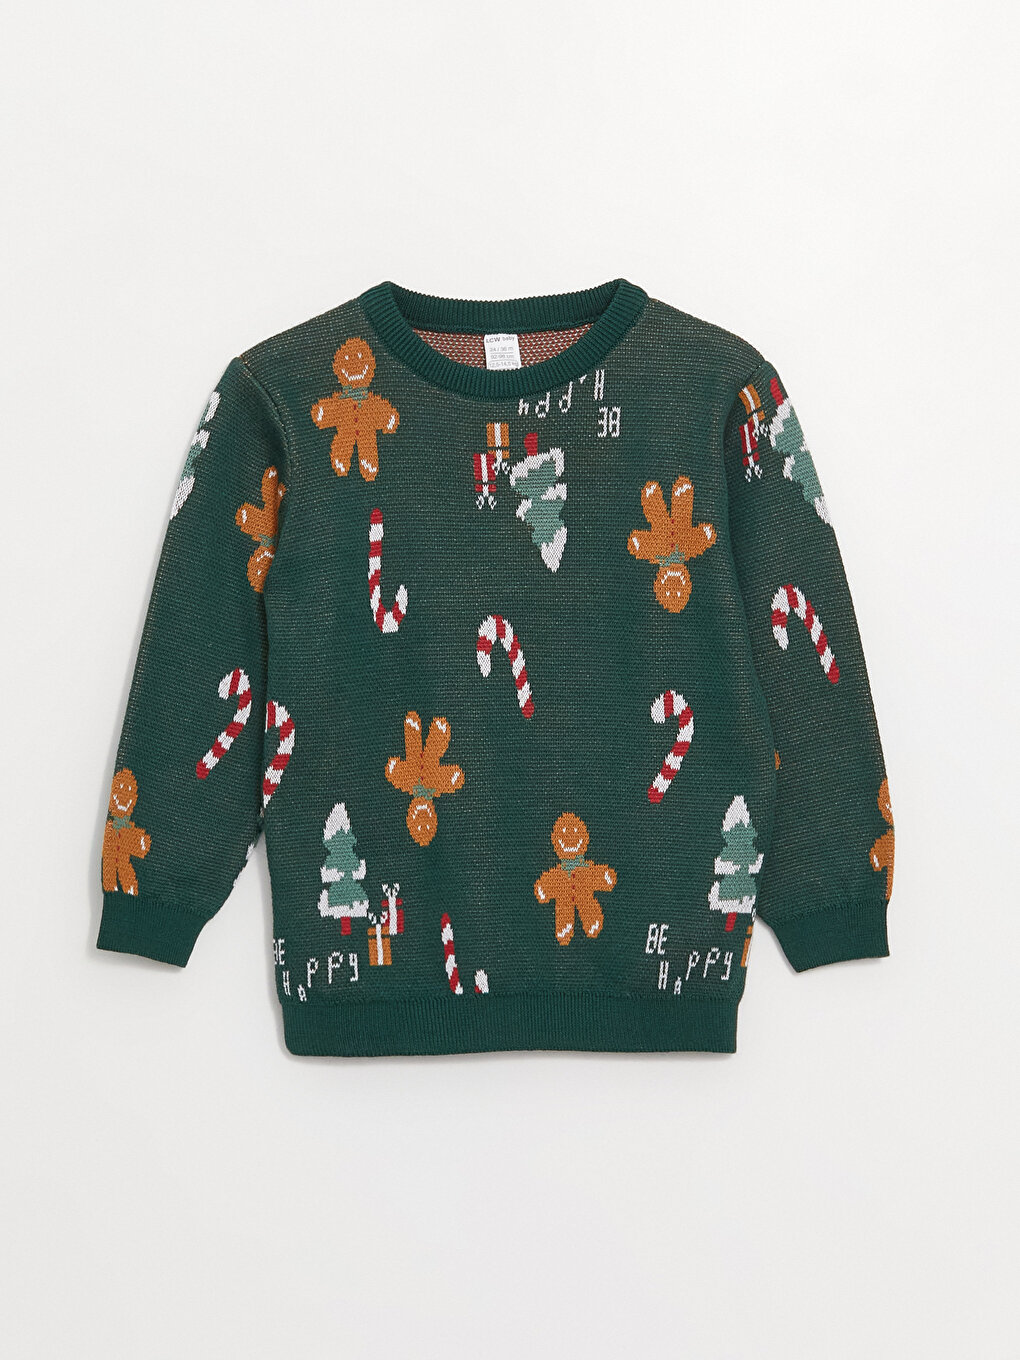 Трикотажный свитер на новогоднюю тематику для мальчика LCW baby